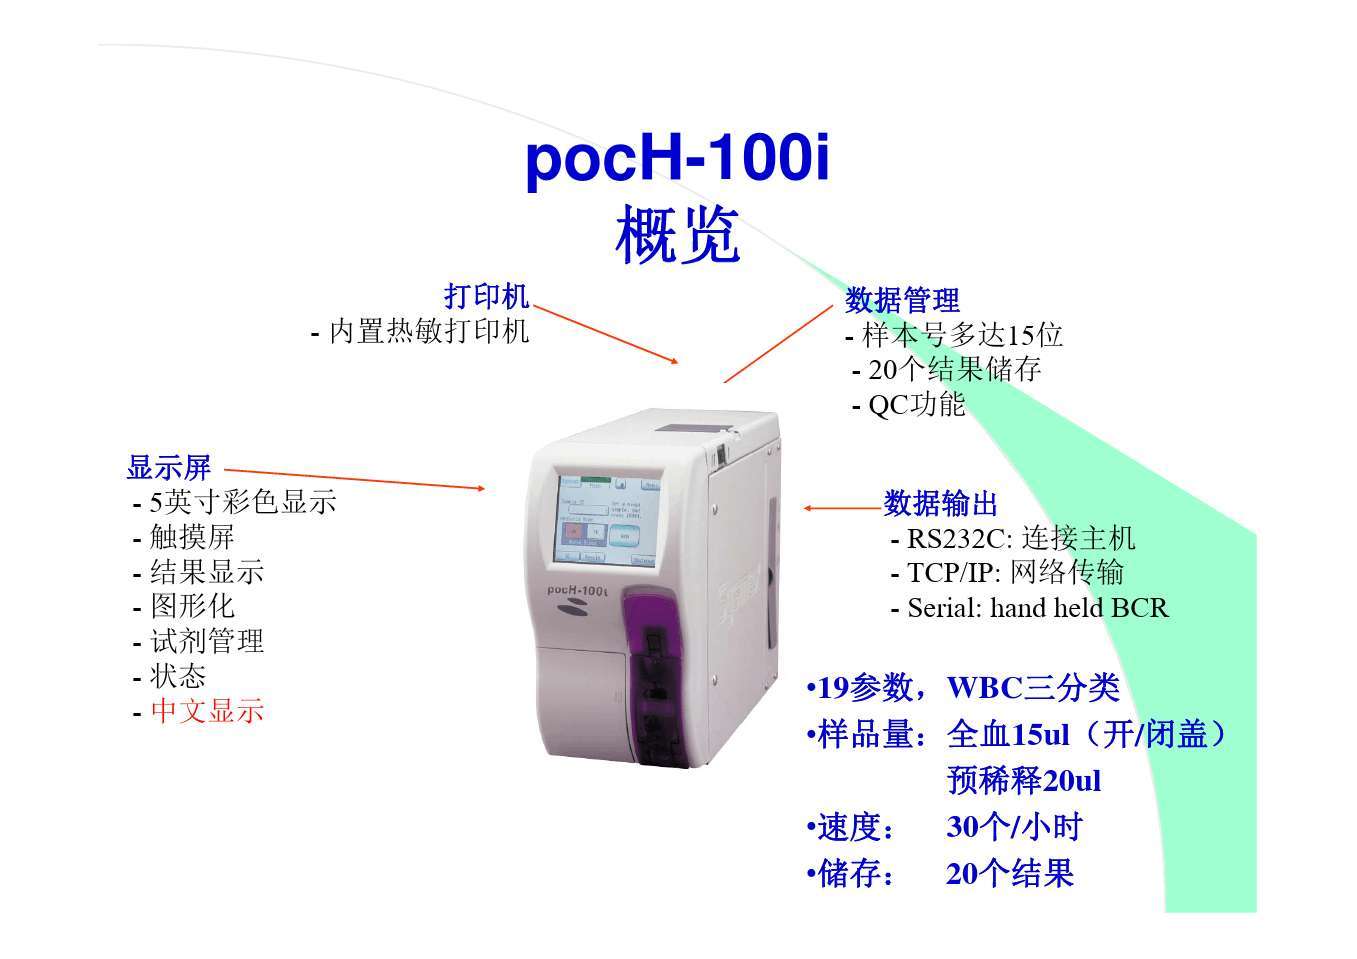 8.希森美康pocH-100全自动三分类血液分析仪